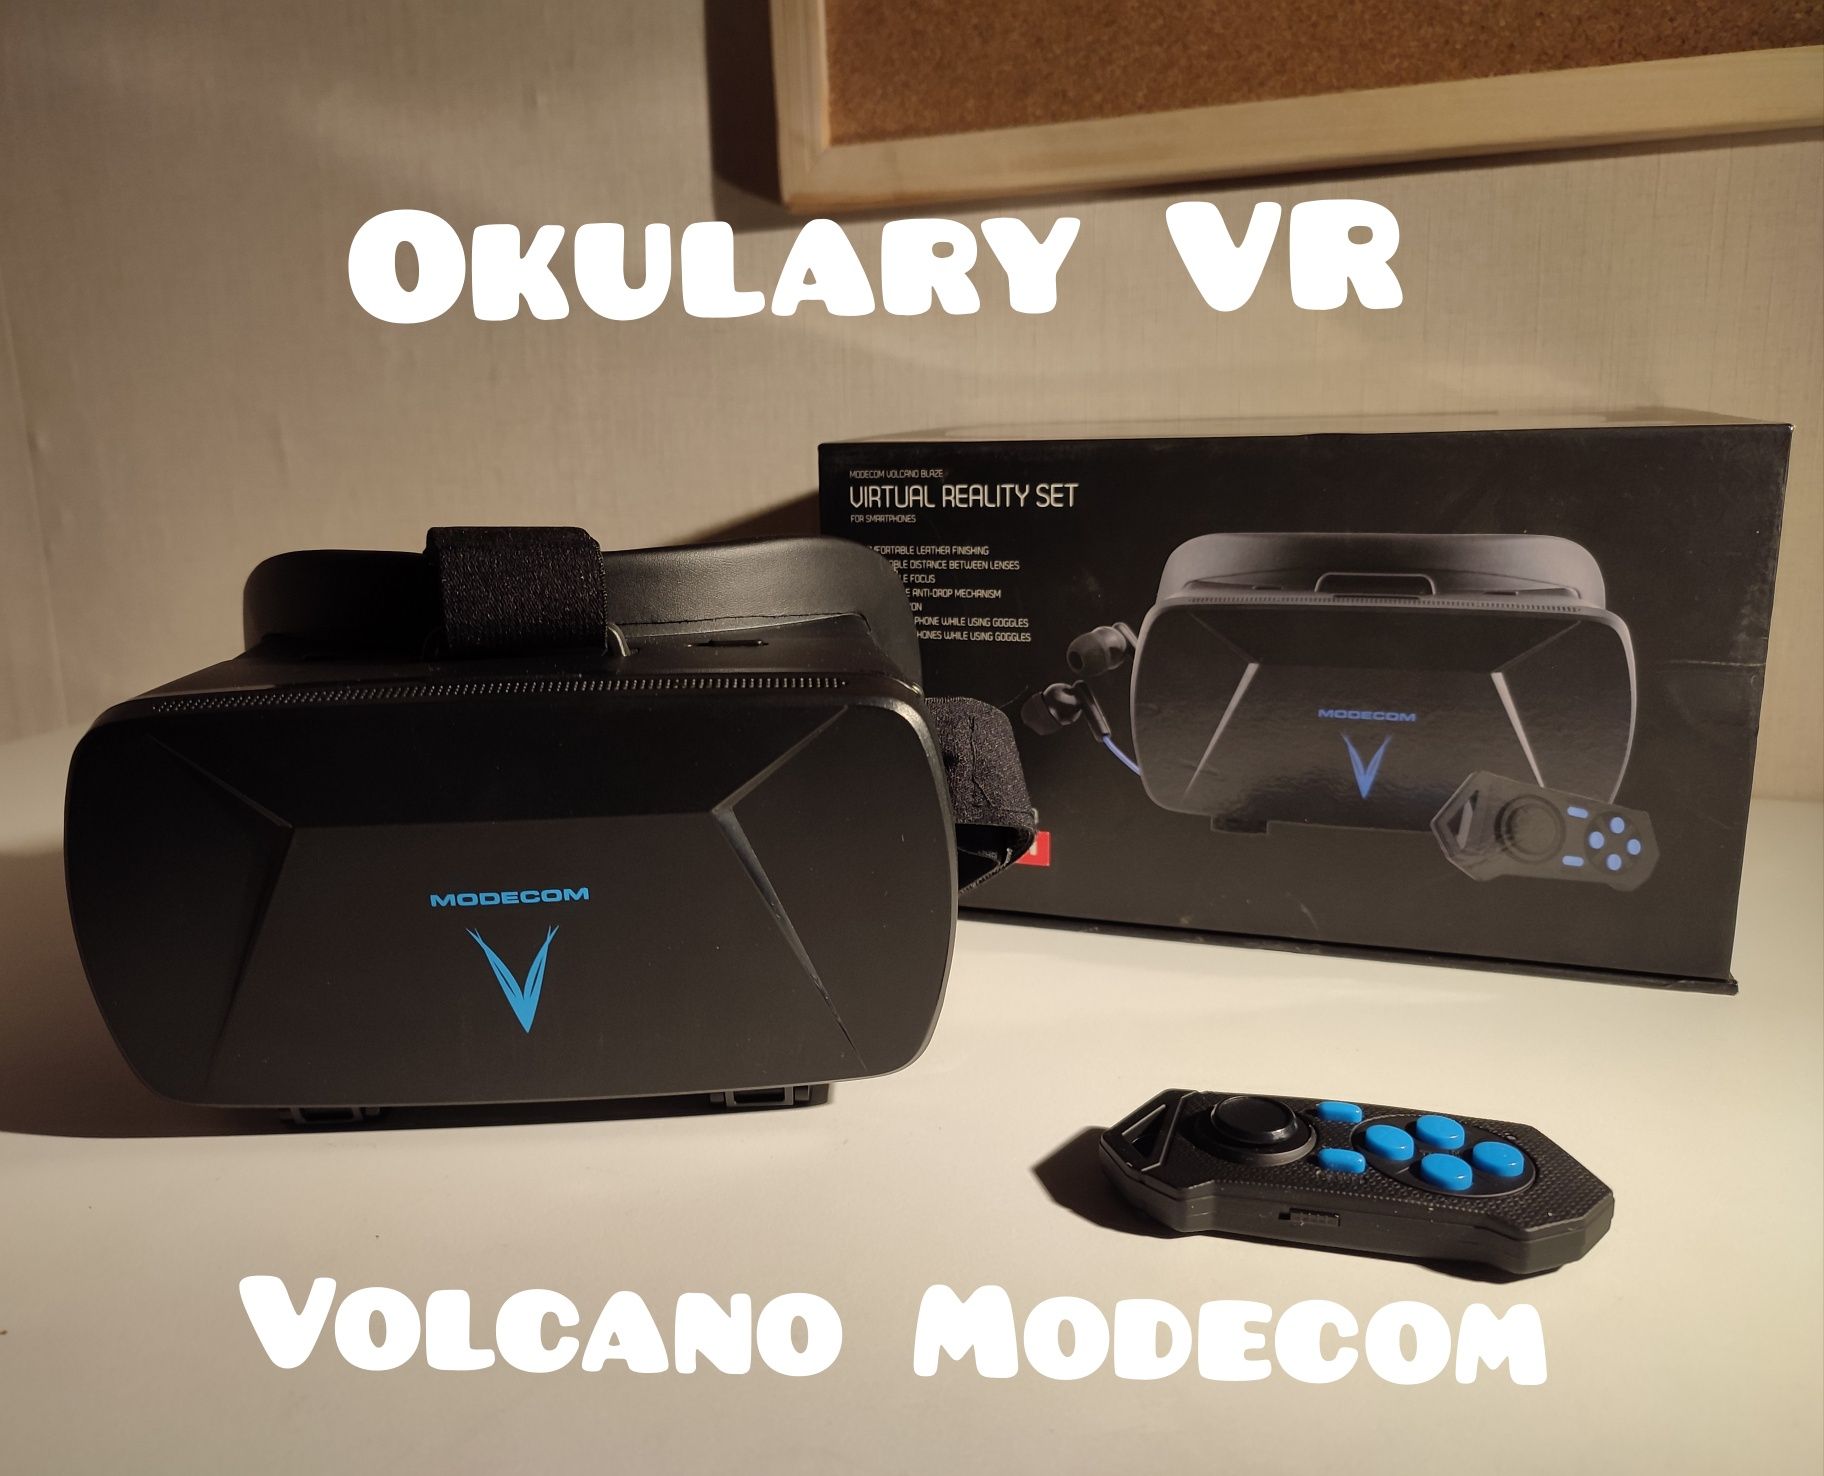 Google VR Volcano Modecom